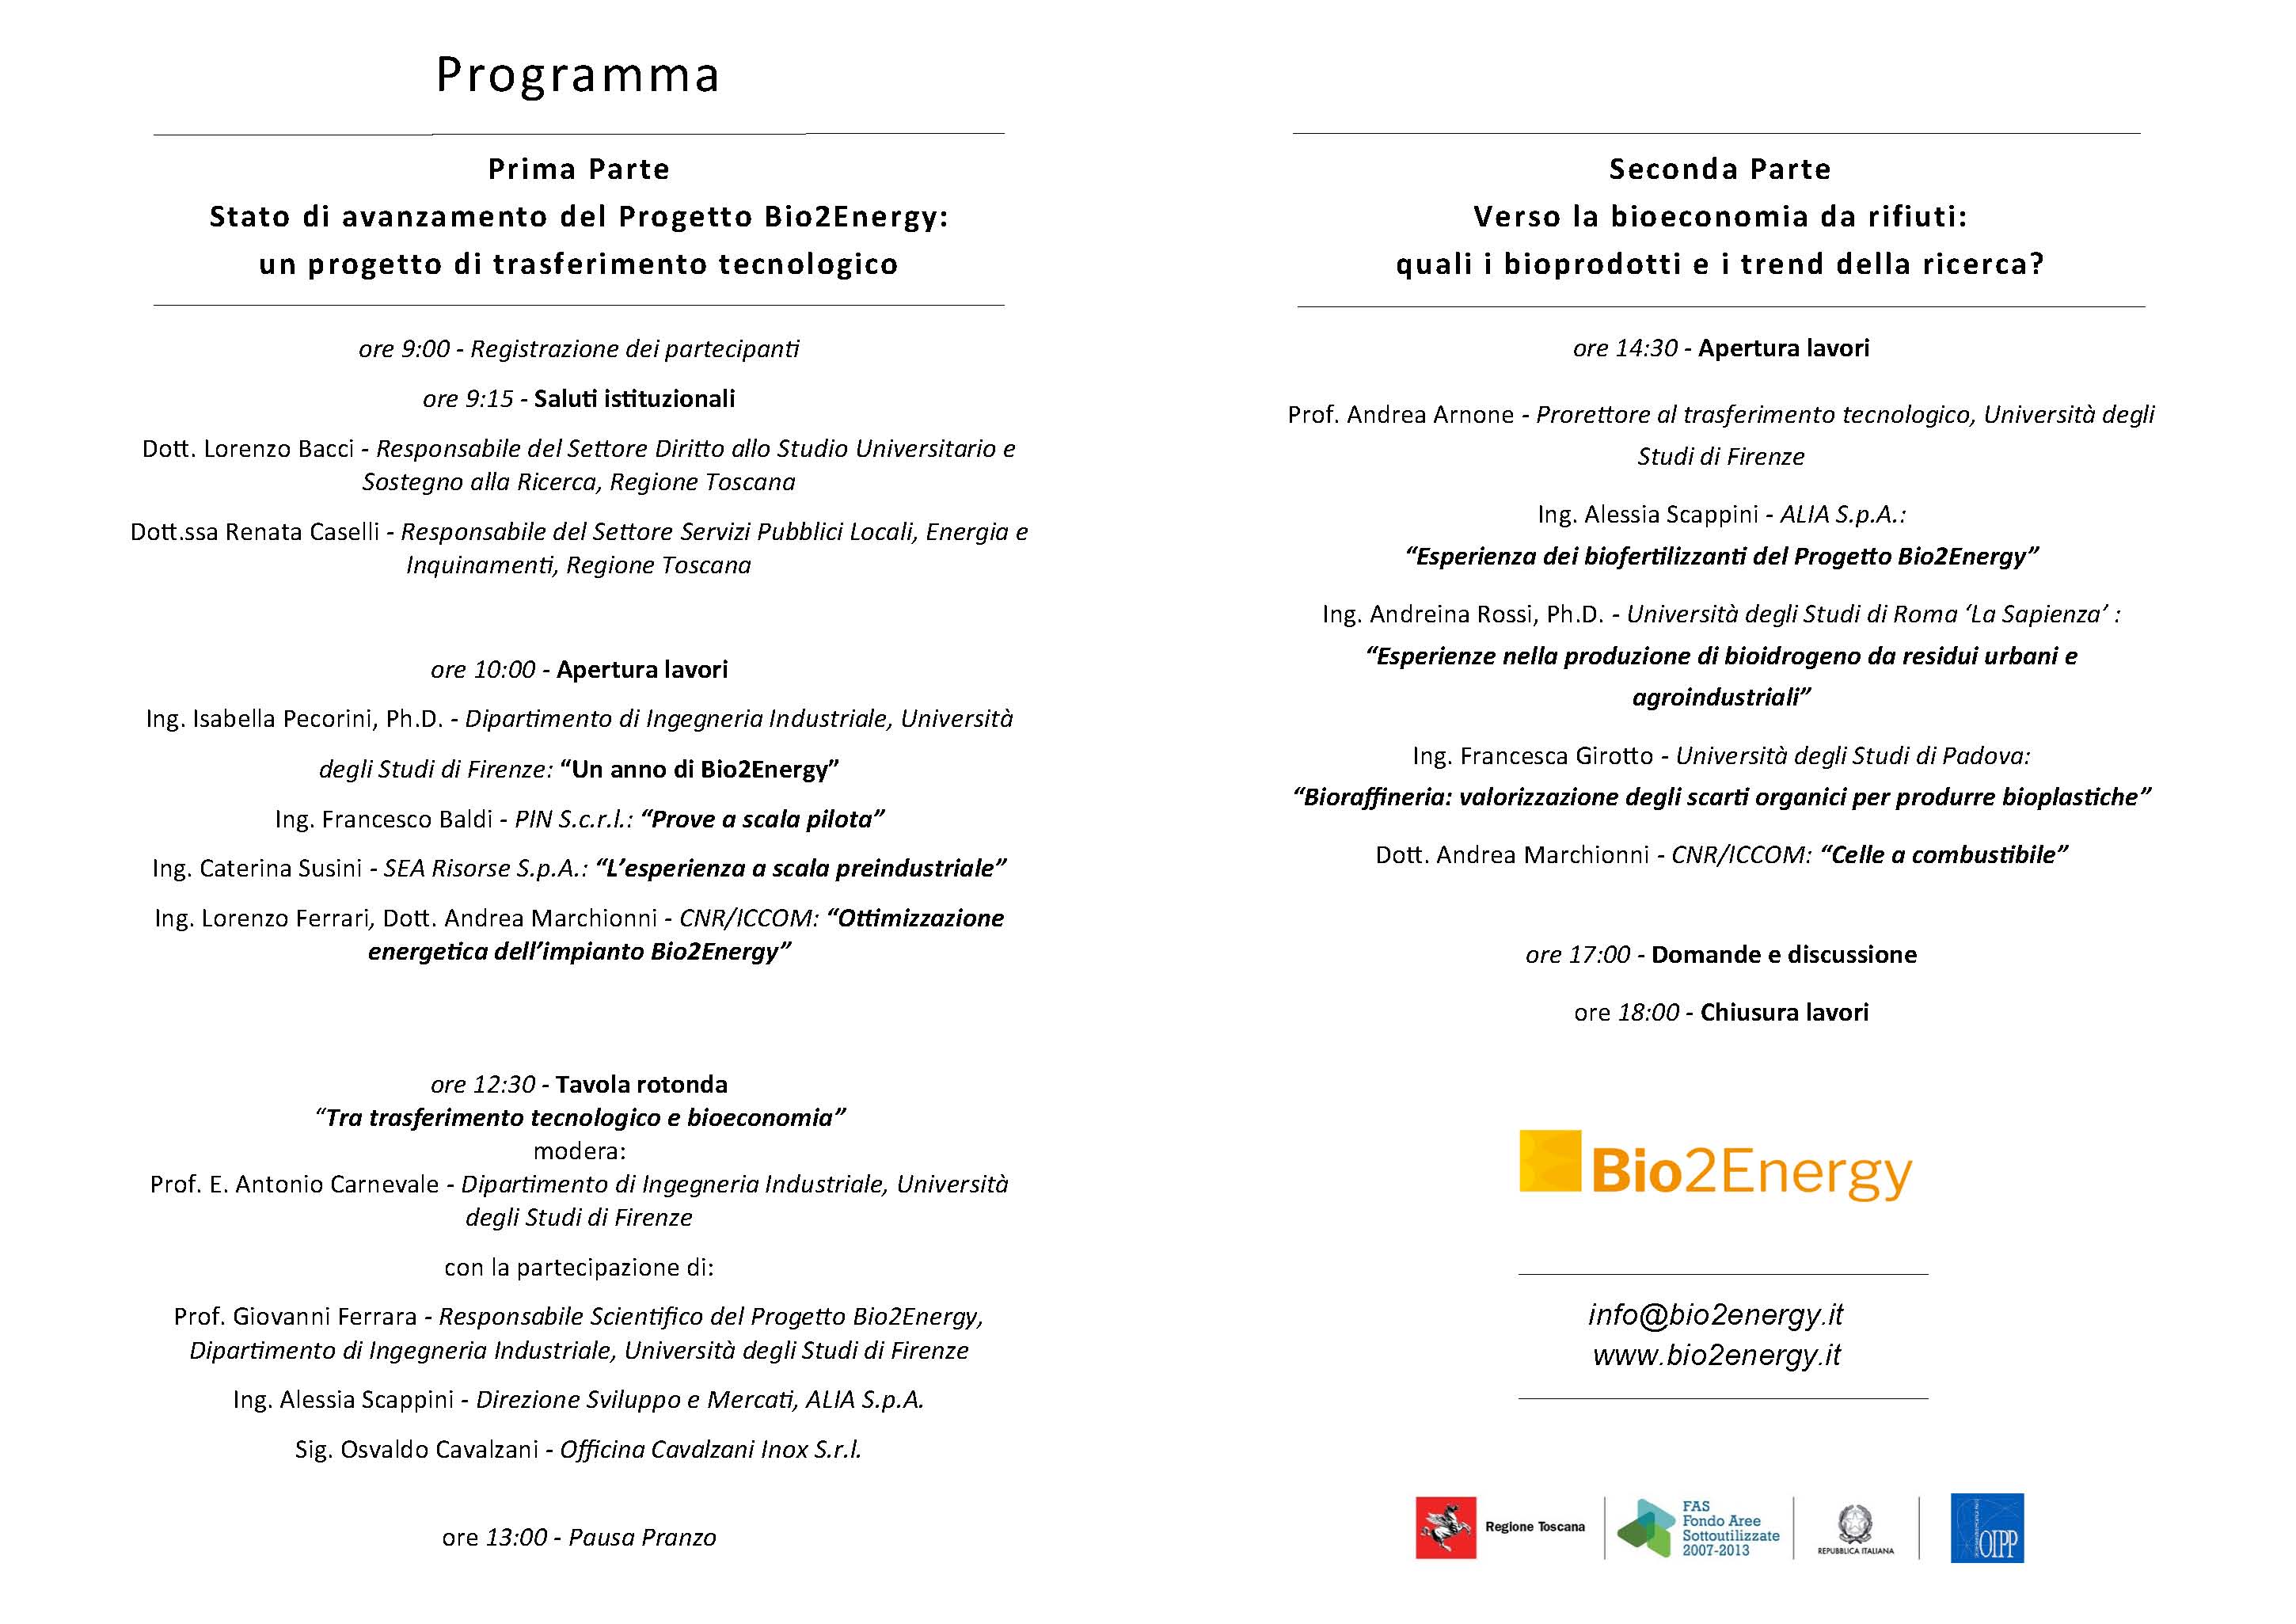 Programma Convegno Bio2Energy: un progetto di Bioeconomia